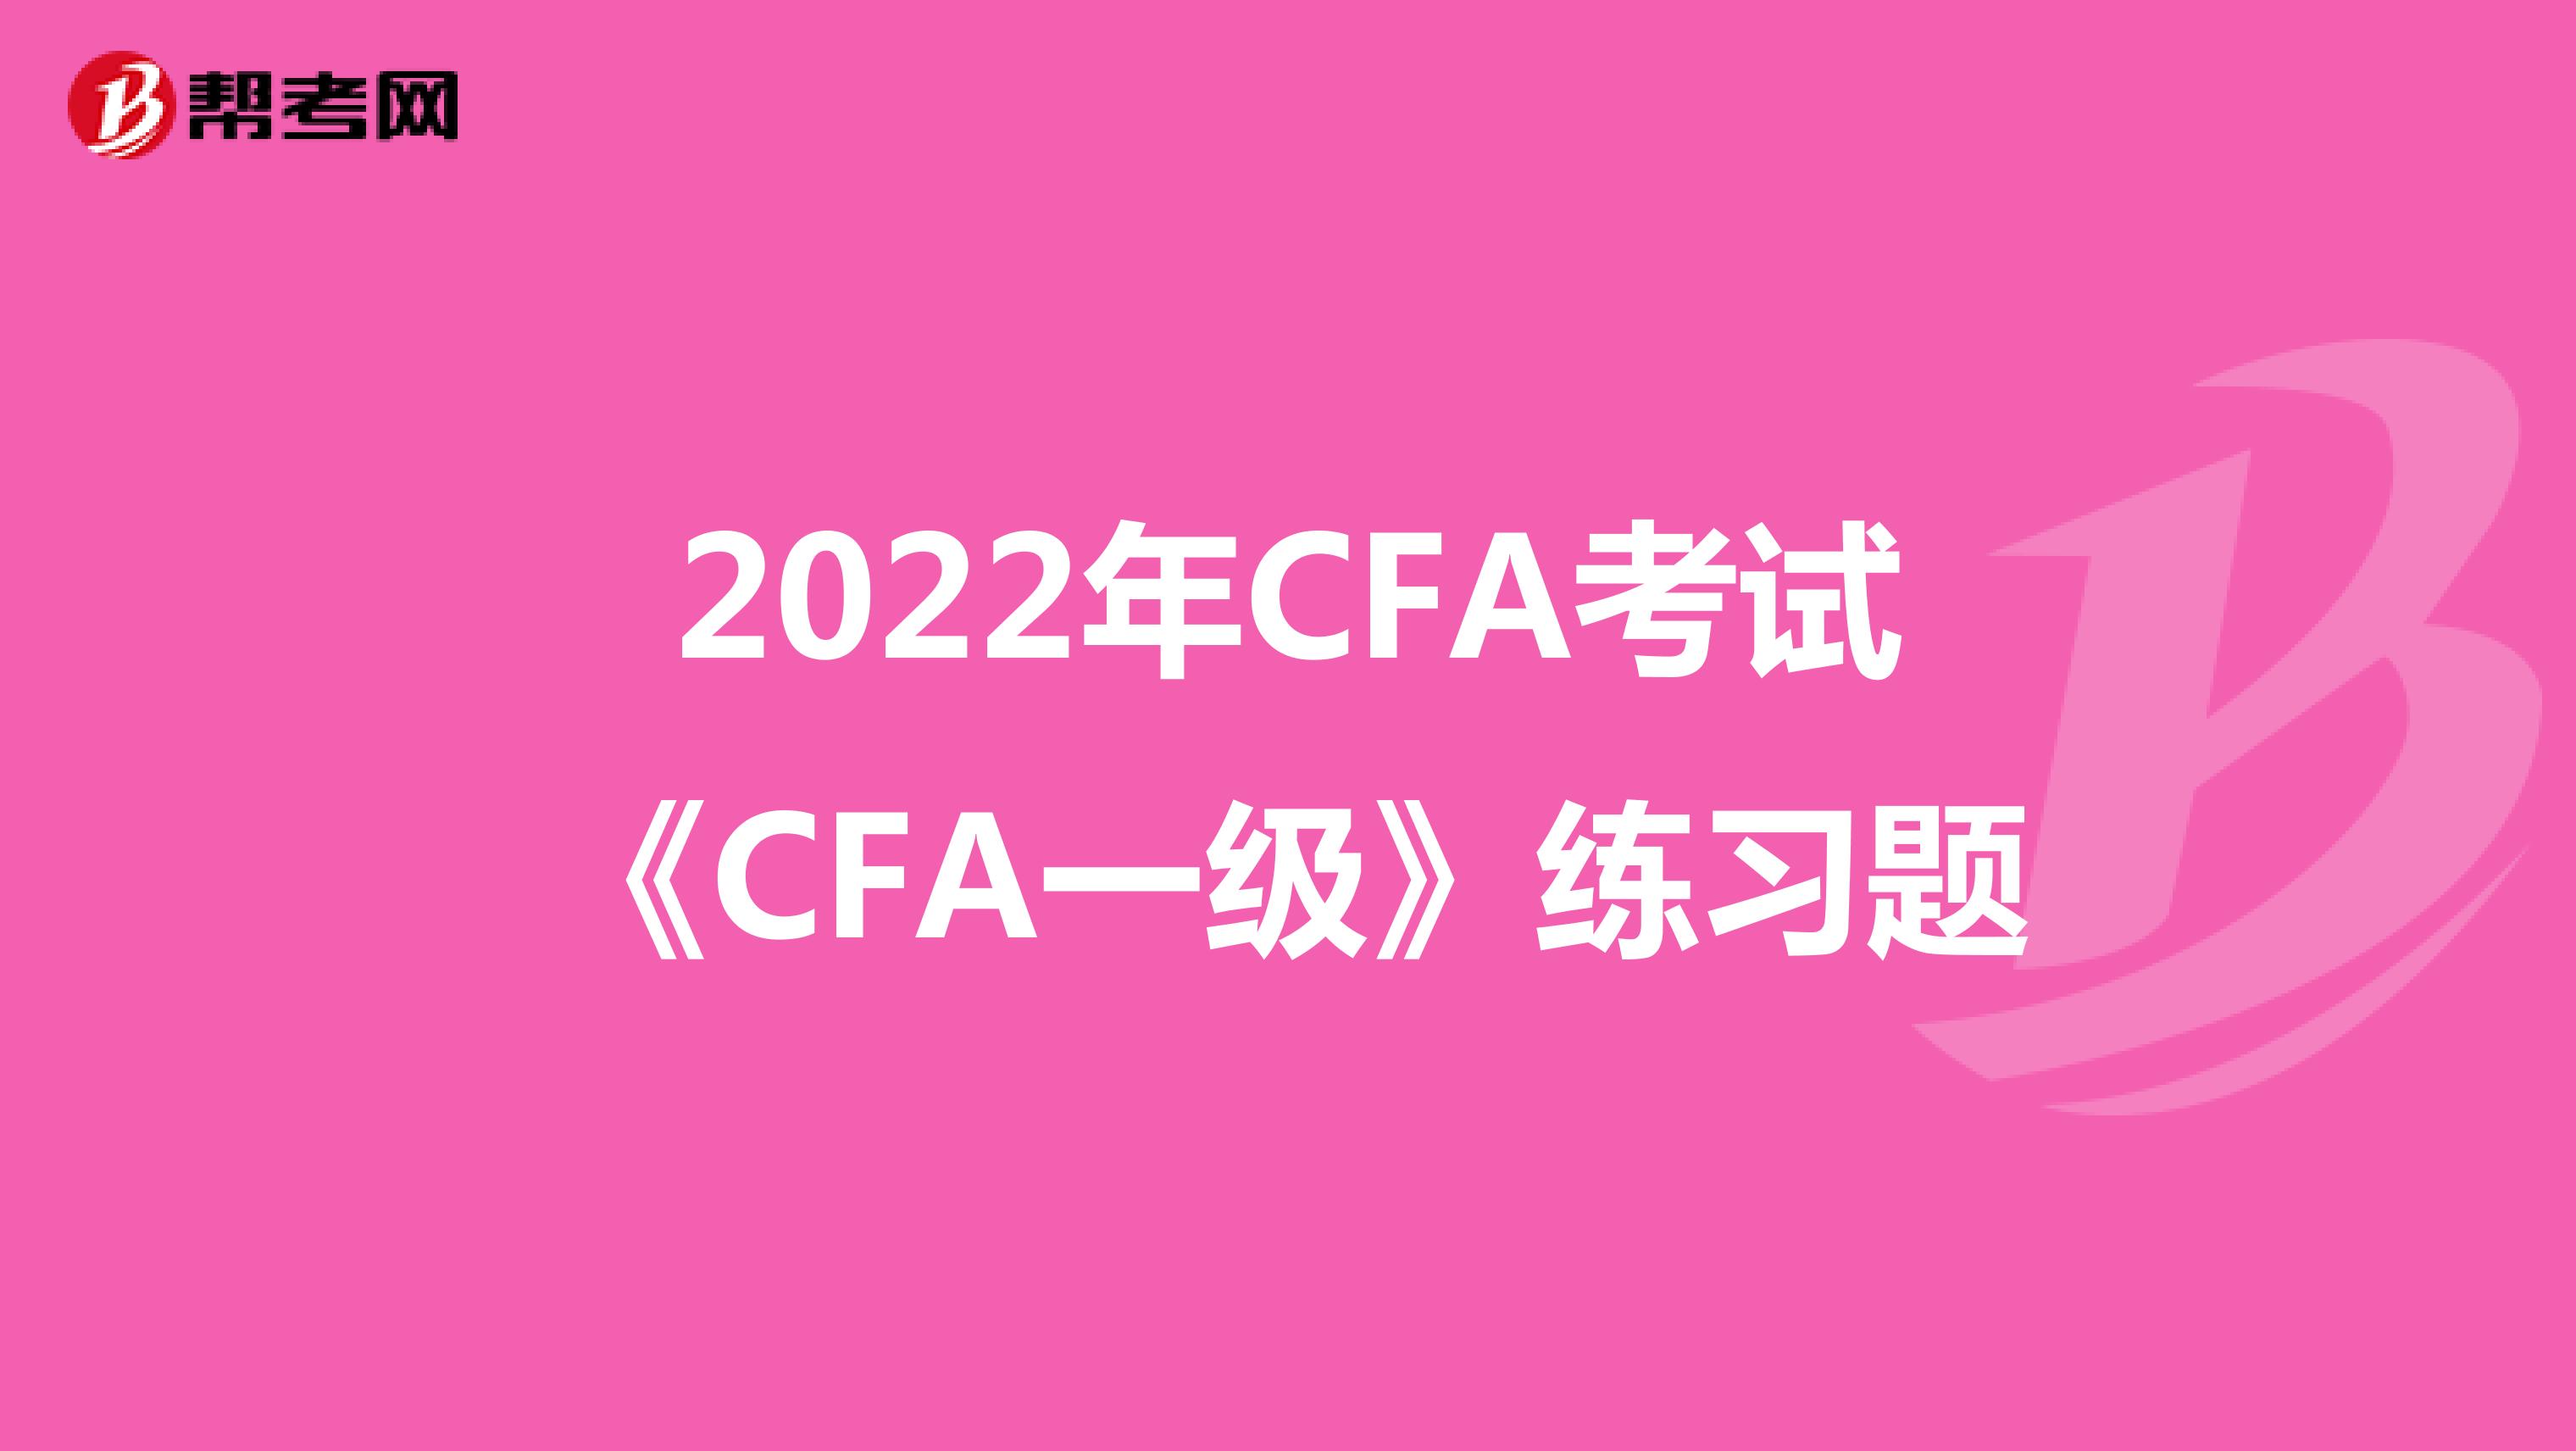 2022年CFA考试《CFA一级》练习题